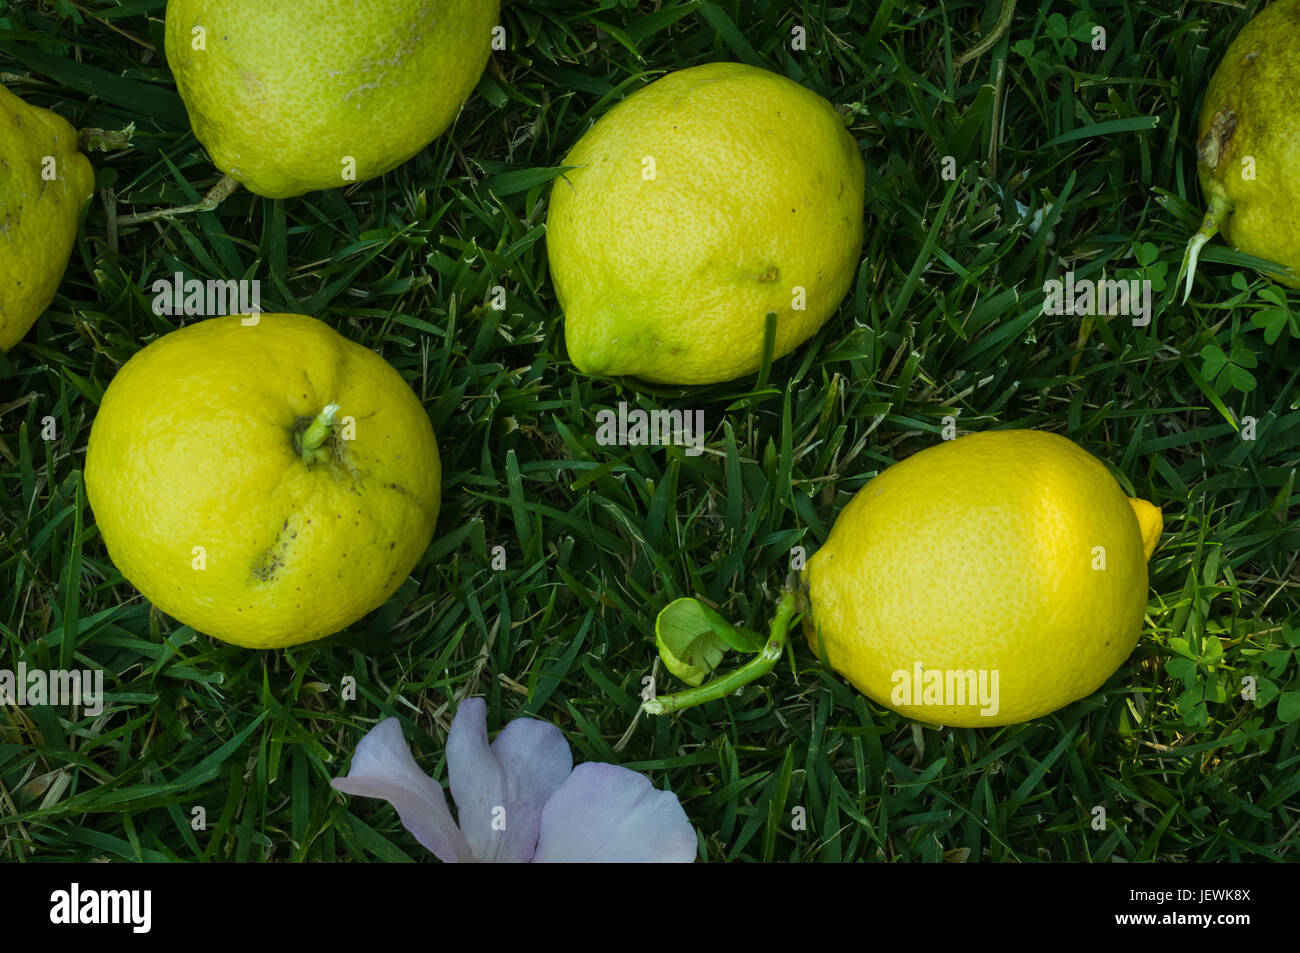 Limoni raccolti da un cortile lemon tree posa su una patch di lussureggiante verde erba Foto Stock